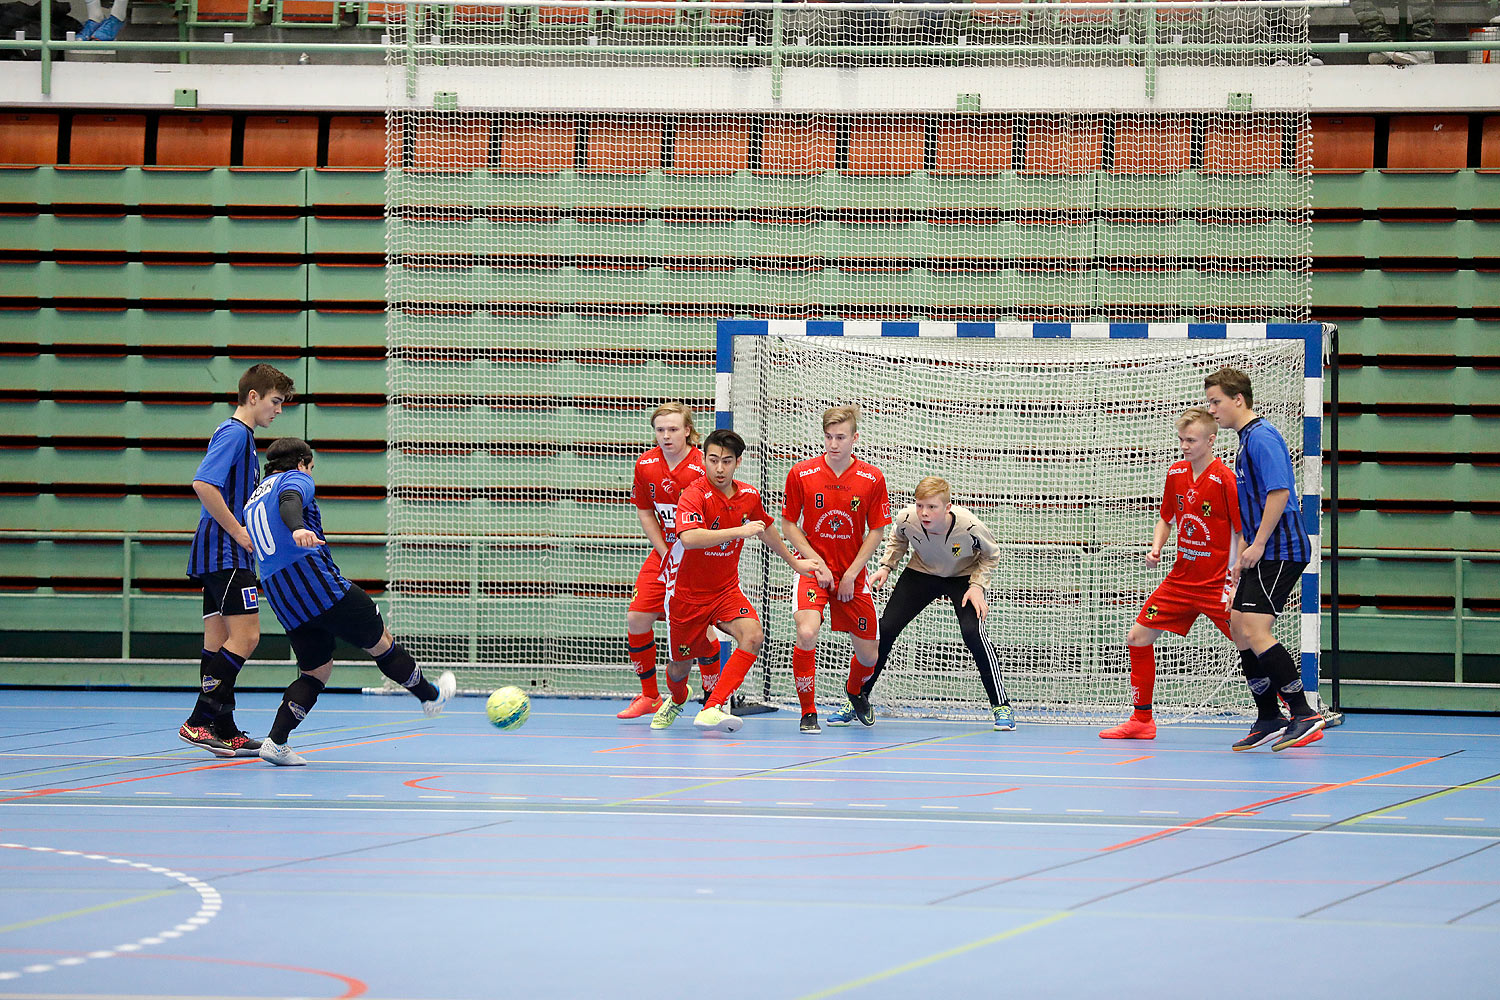 Skövde Futsalcup Herrjuniorer Ulricehamns IFK-Töreboda IK,herr,Arena Skövde,Skövde,Sverige,Skövde Futsalcup 2016,Futsal,2016,141923